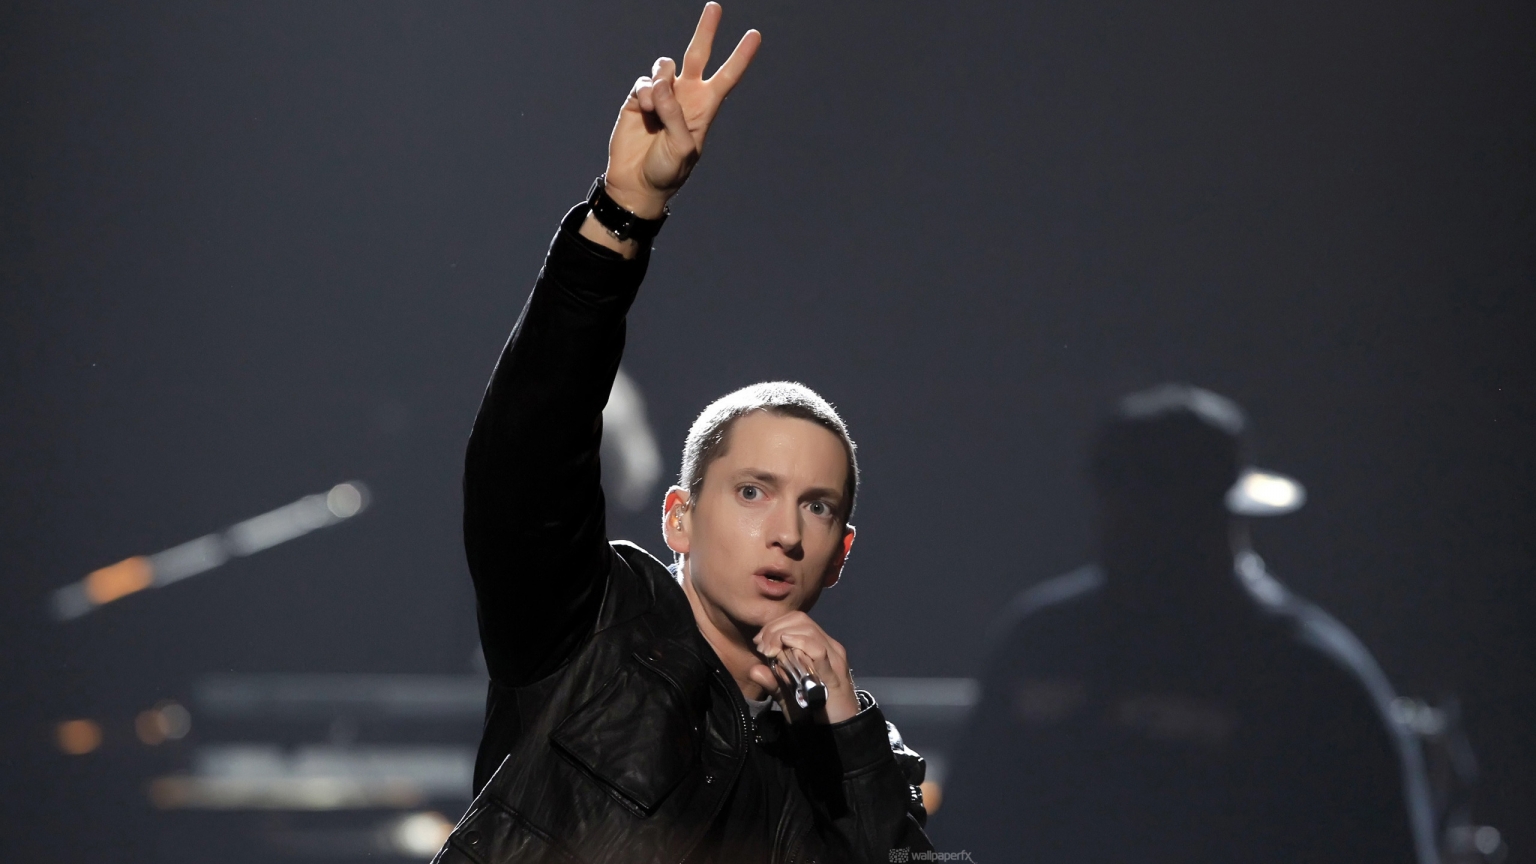 Eminem Peace for 1536 x 864 HDTV resolution